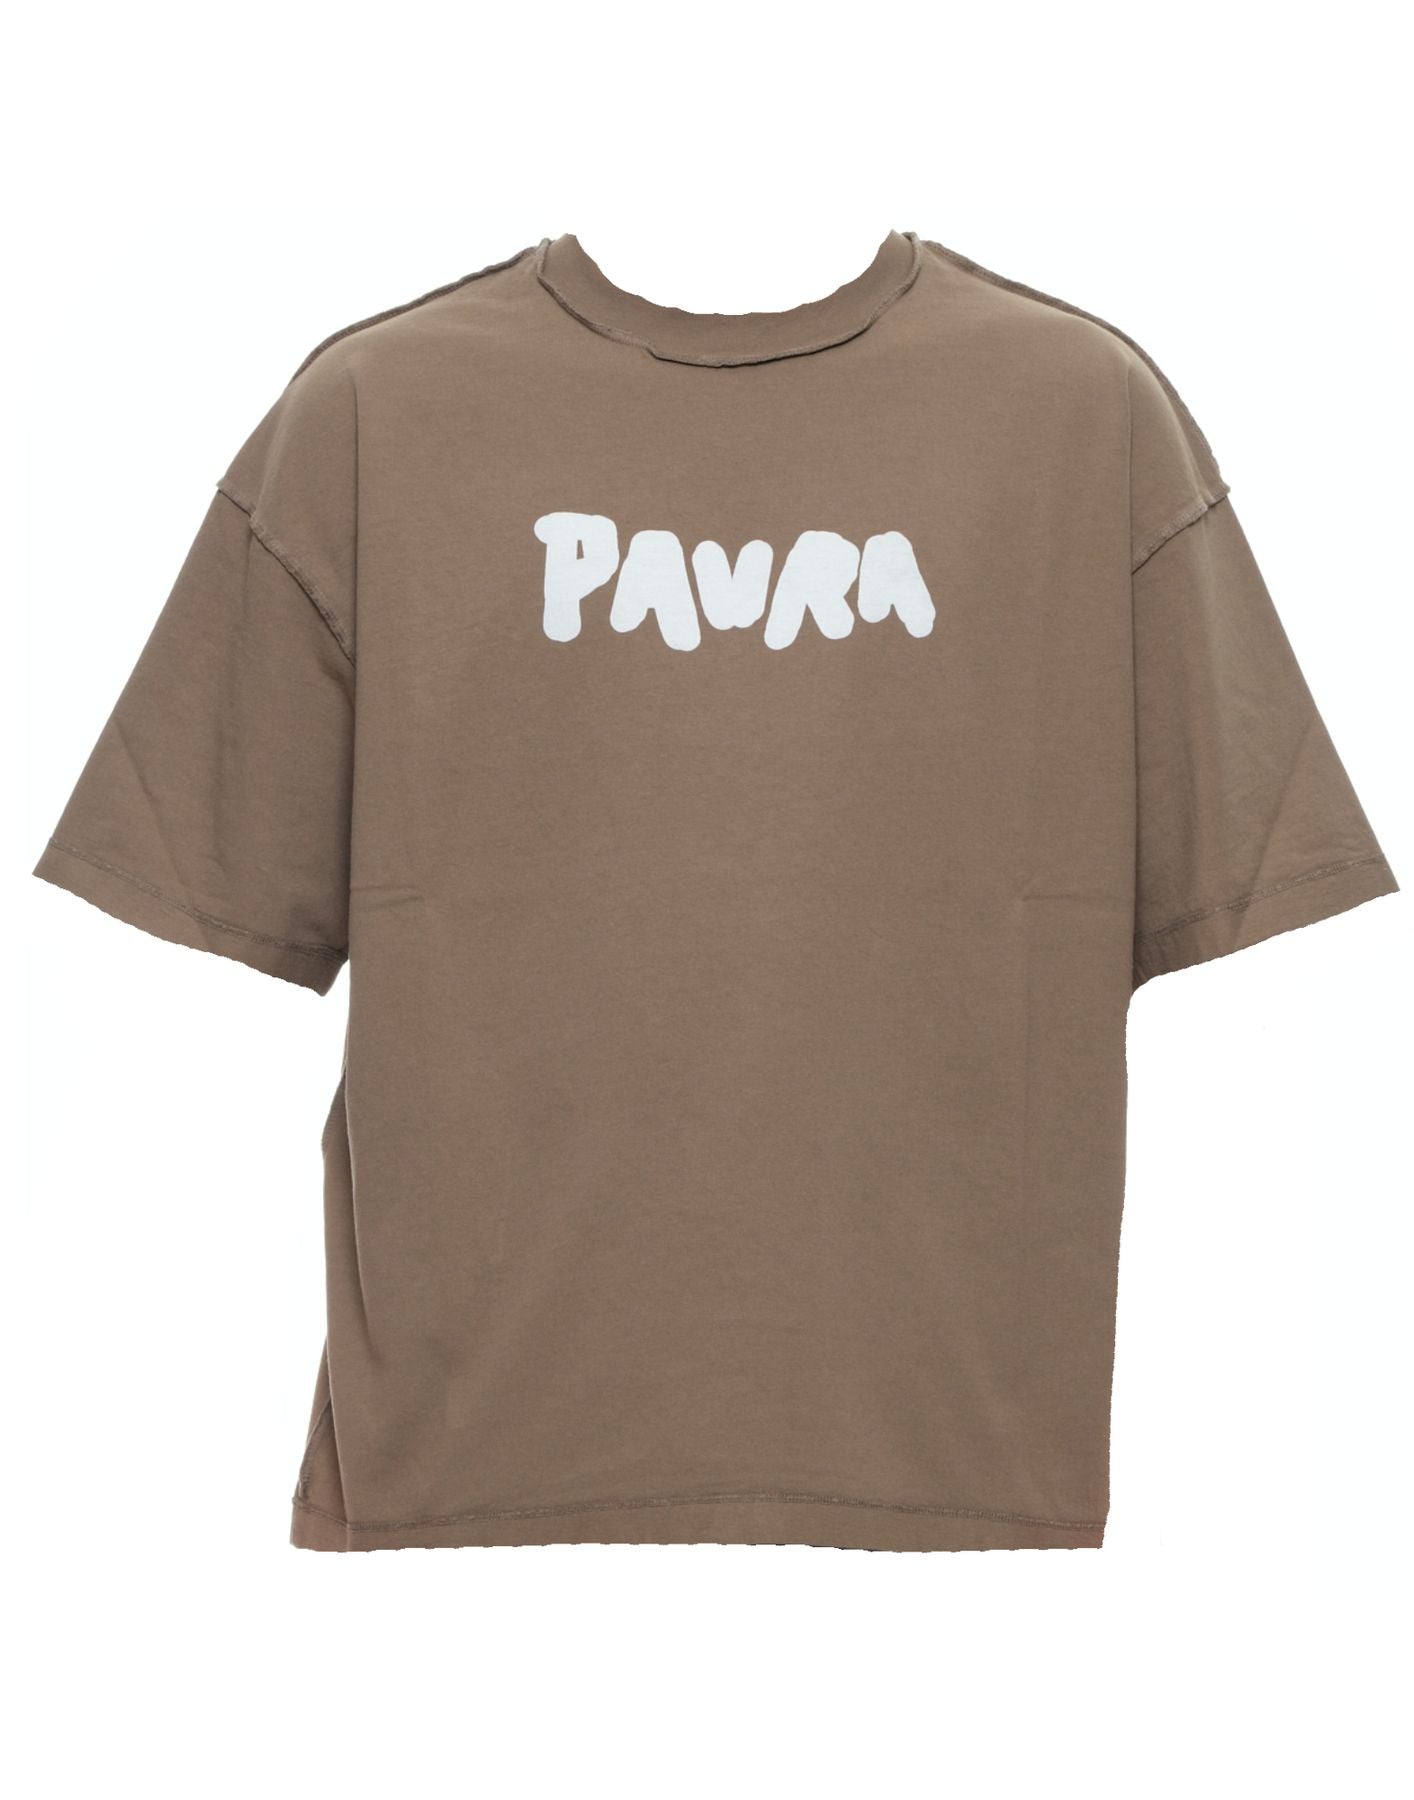 티셔츠 남자 티셔츠 대담한 코스타 대형 Paura